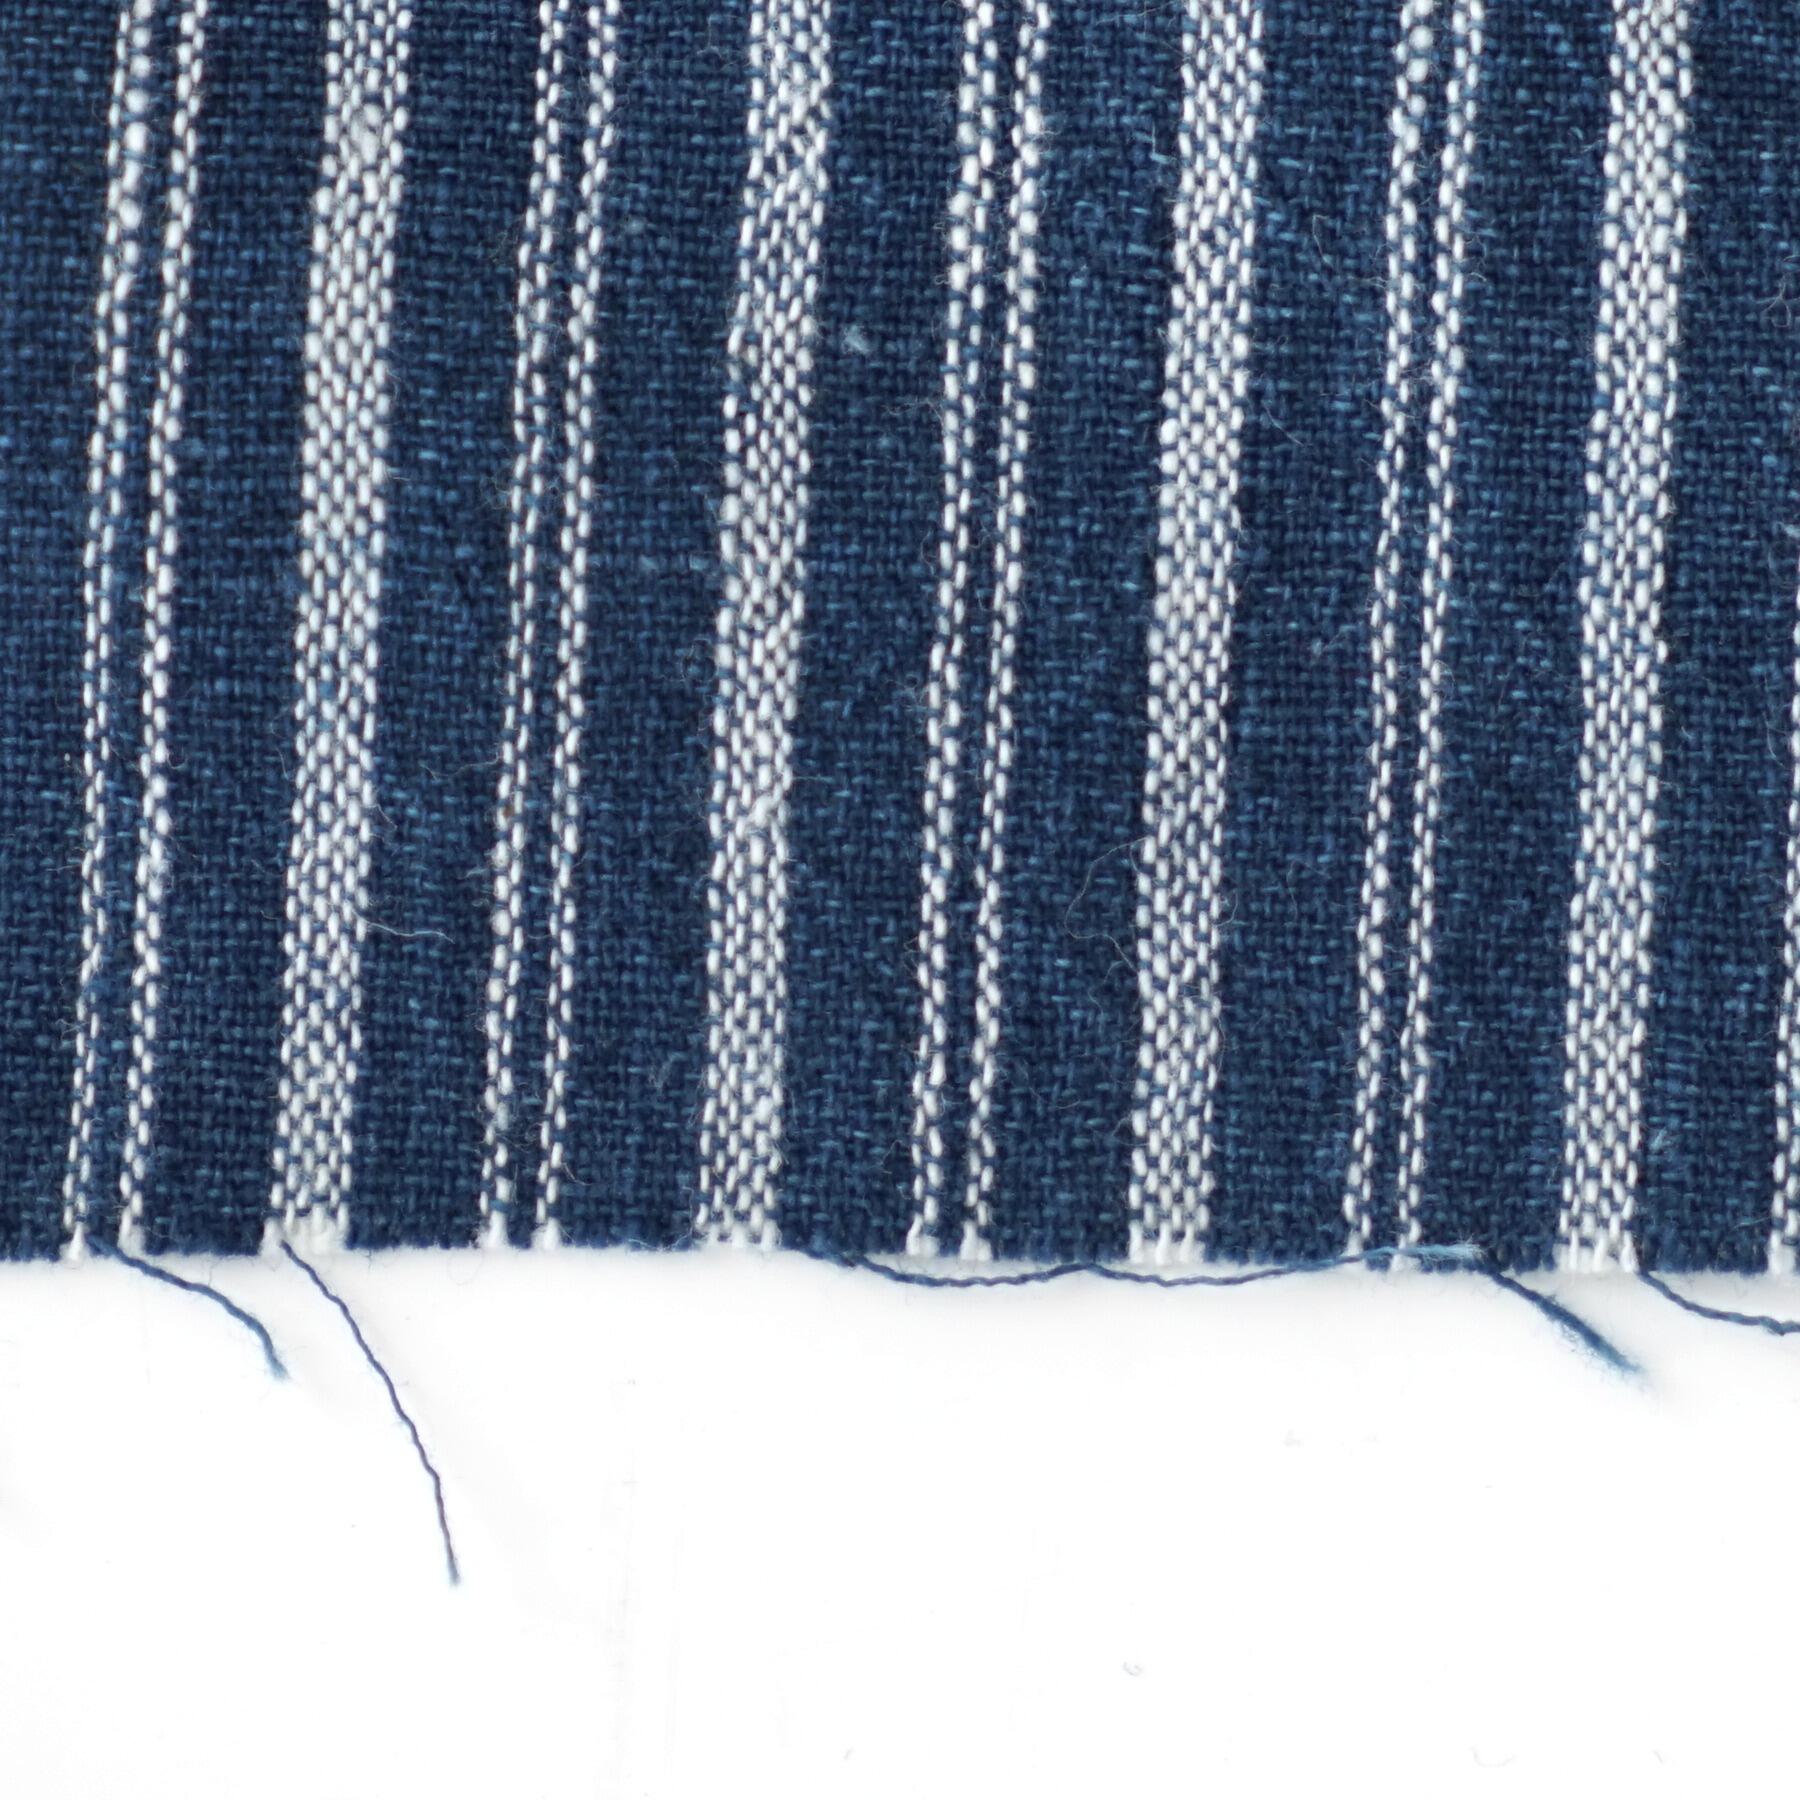 100% Handloom Woven Cotton - Double Stripes - Natural Indigo Warp & Weft, White Warp - Close Up